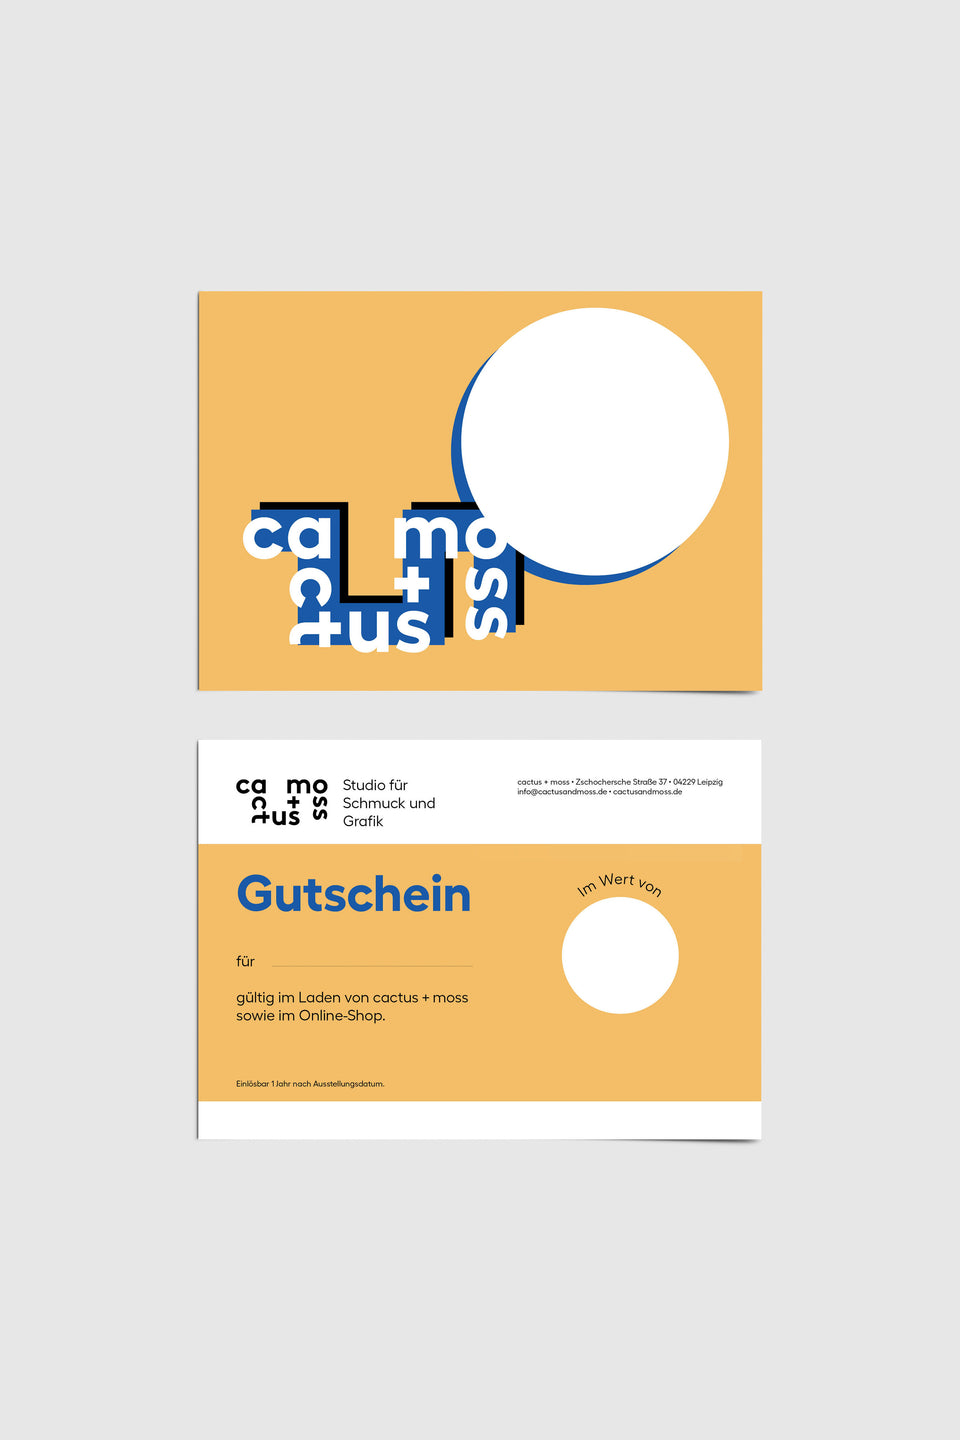 collections/Gutschein_Kurs.jpg